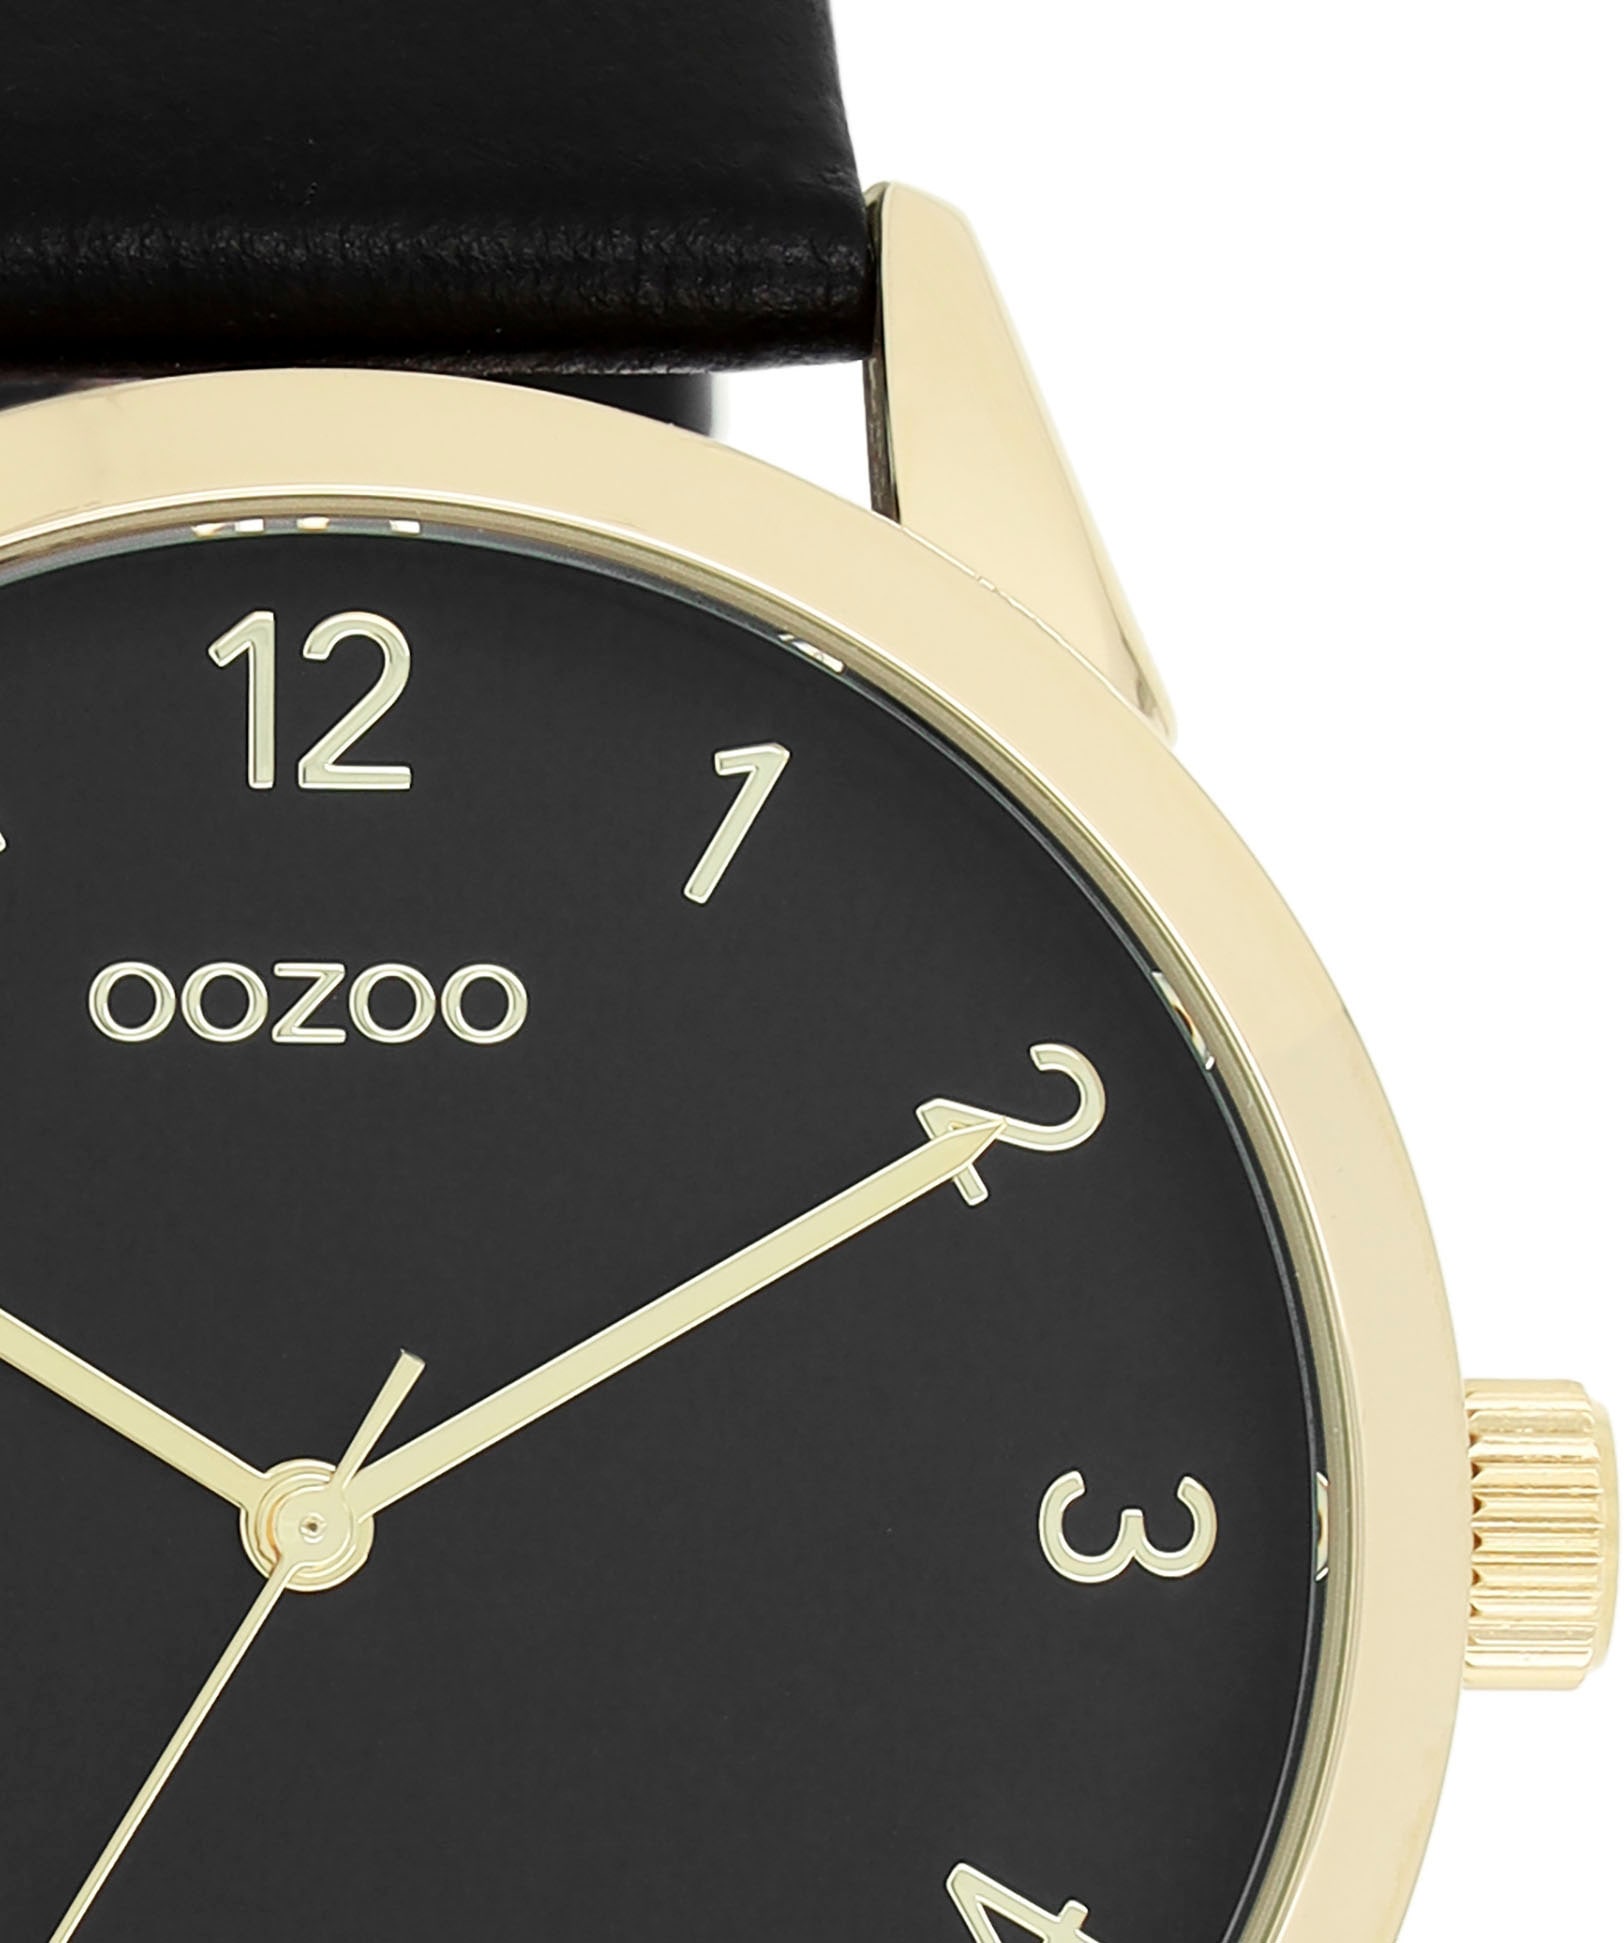 OOZOO Quarzuhr, Armbanduhr für Damen & Herren, unisex, analog